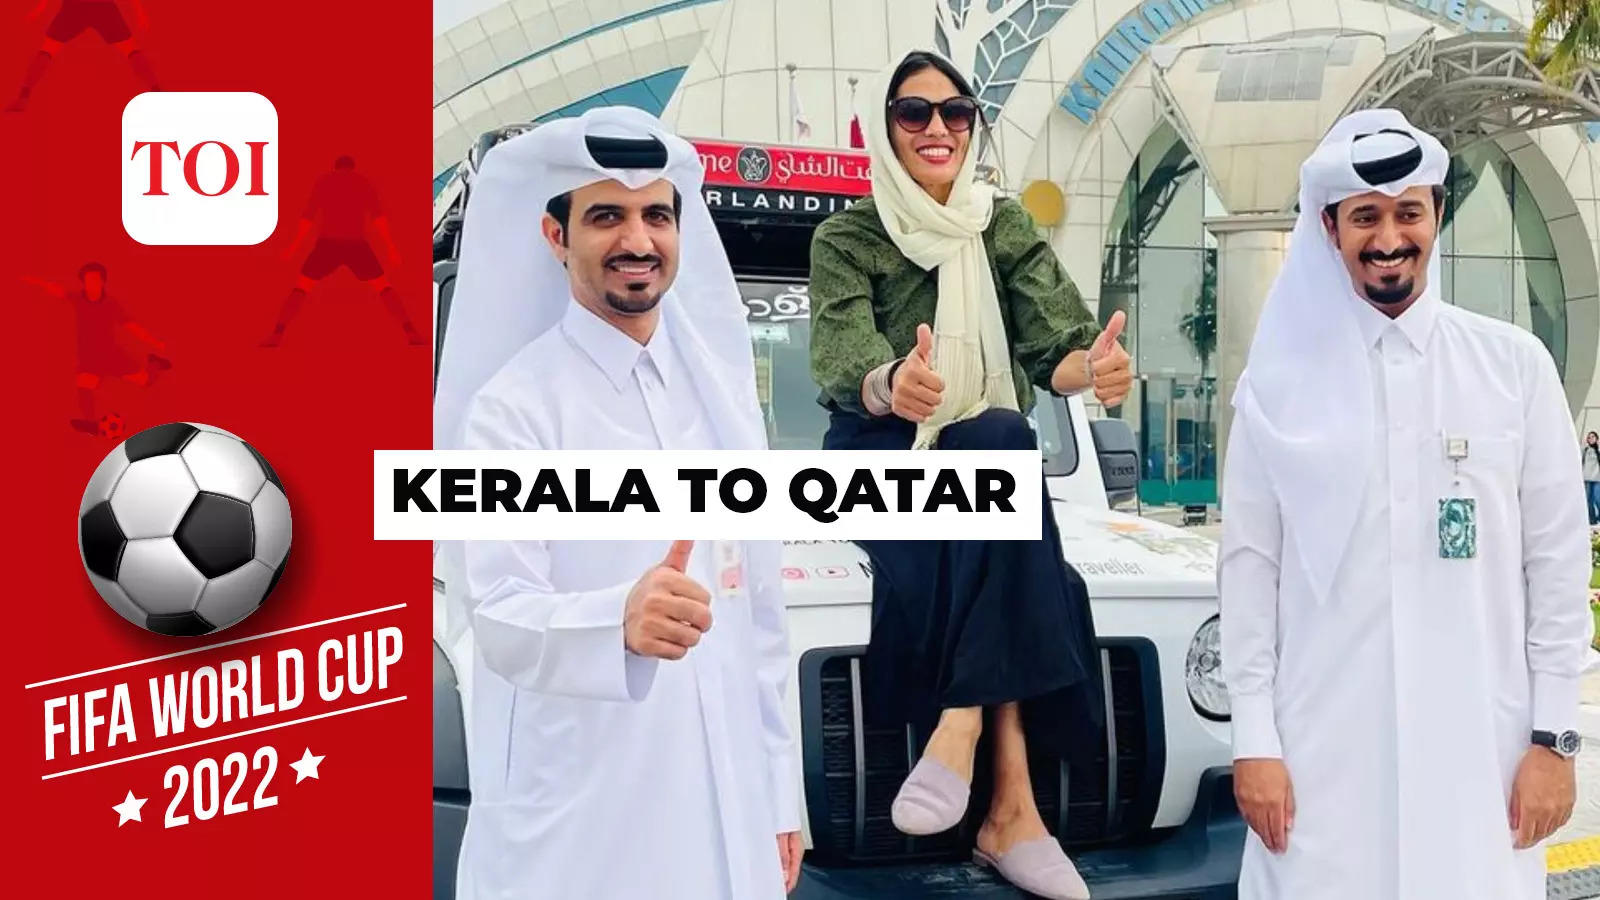 kerala to qatar road trip